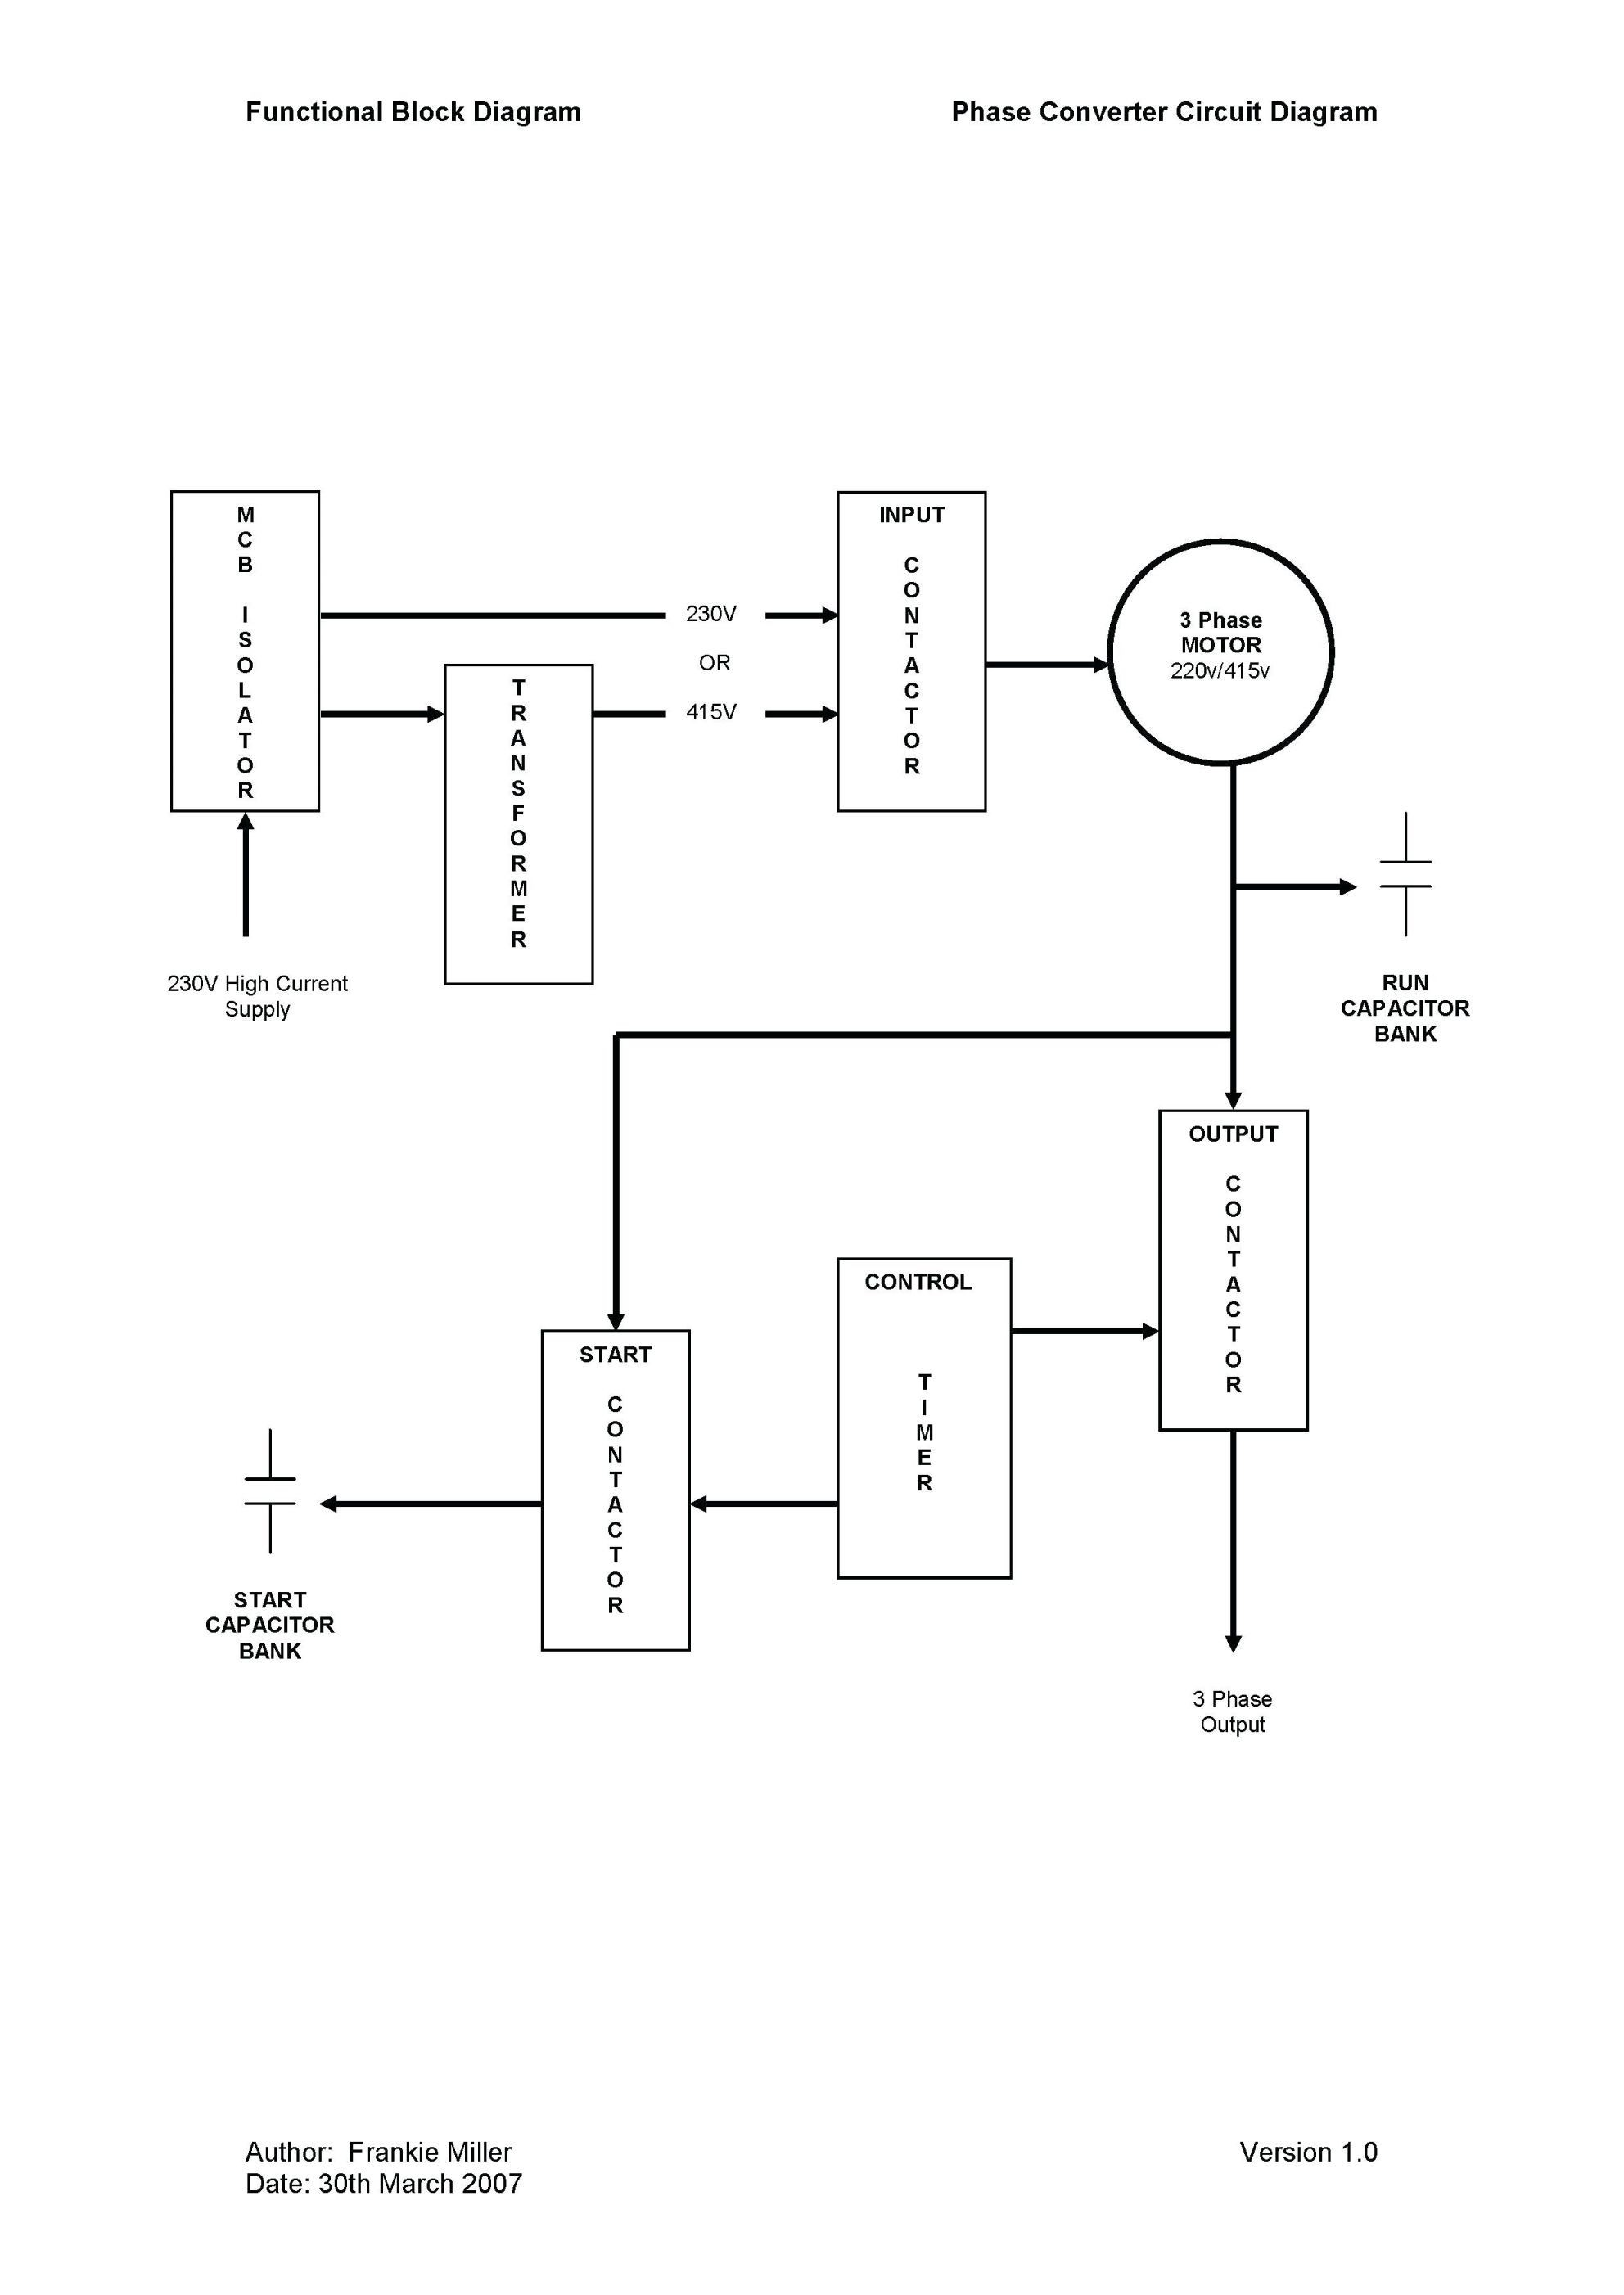 Wiring Diagram Power Inverter New Schematic For Phase Converter Wiring Diagram For Power Converter Wiring Diagram For Power Inverter